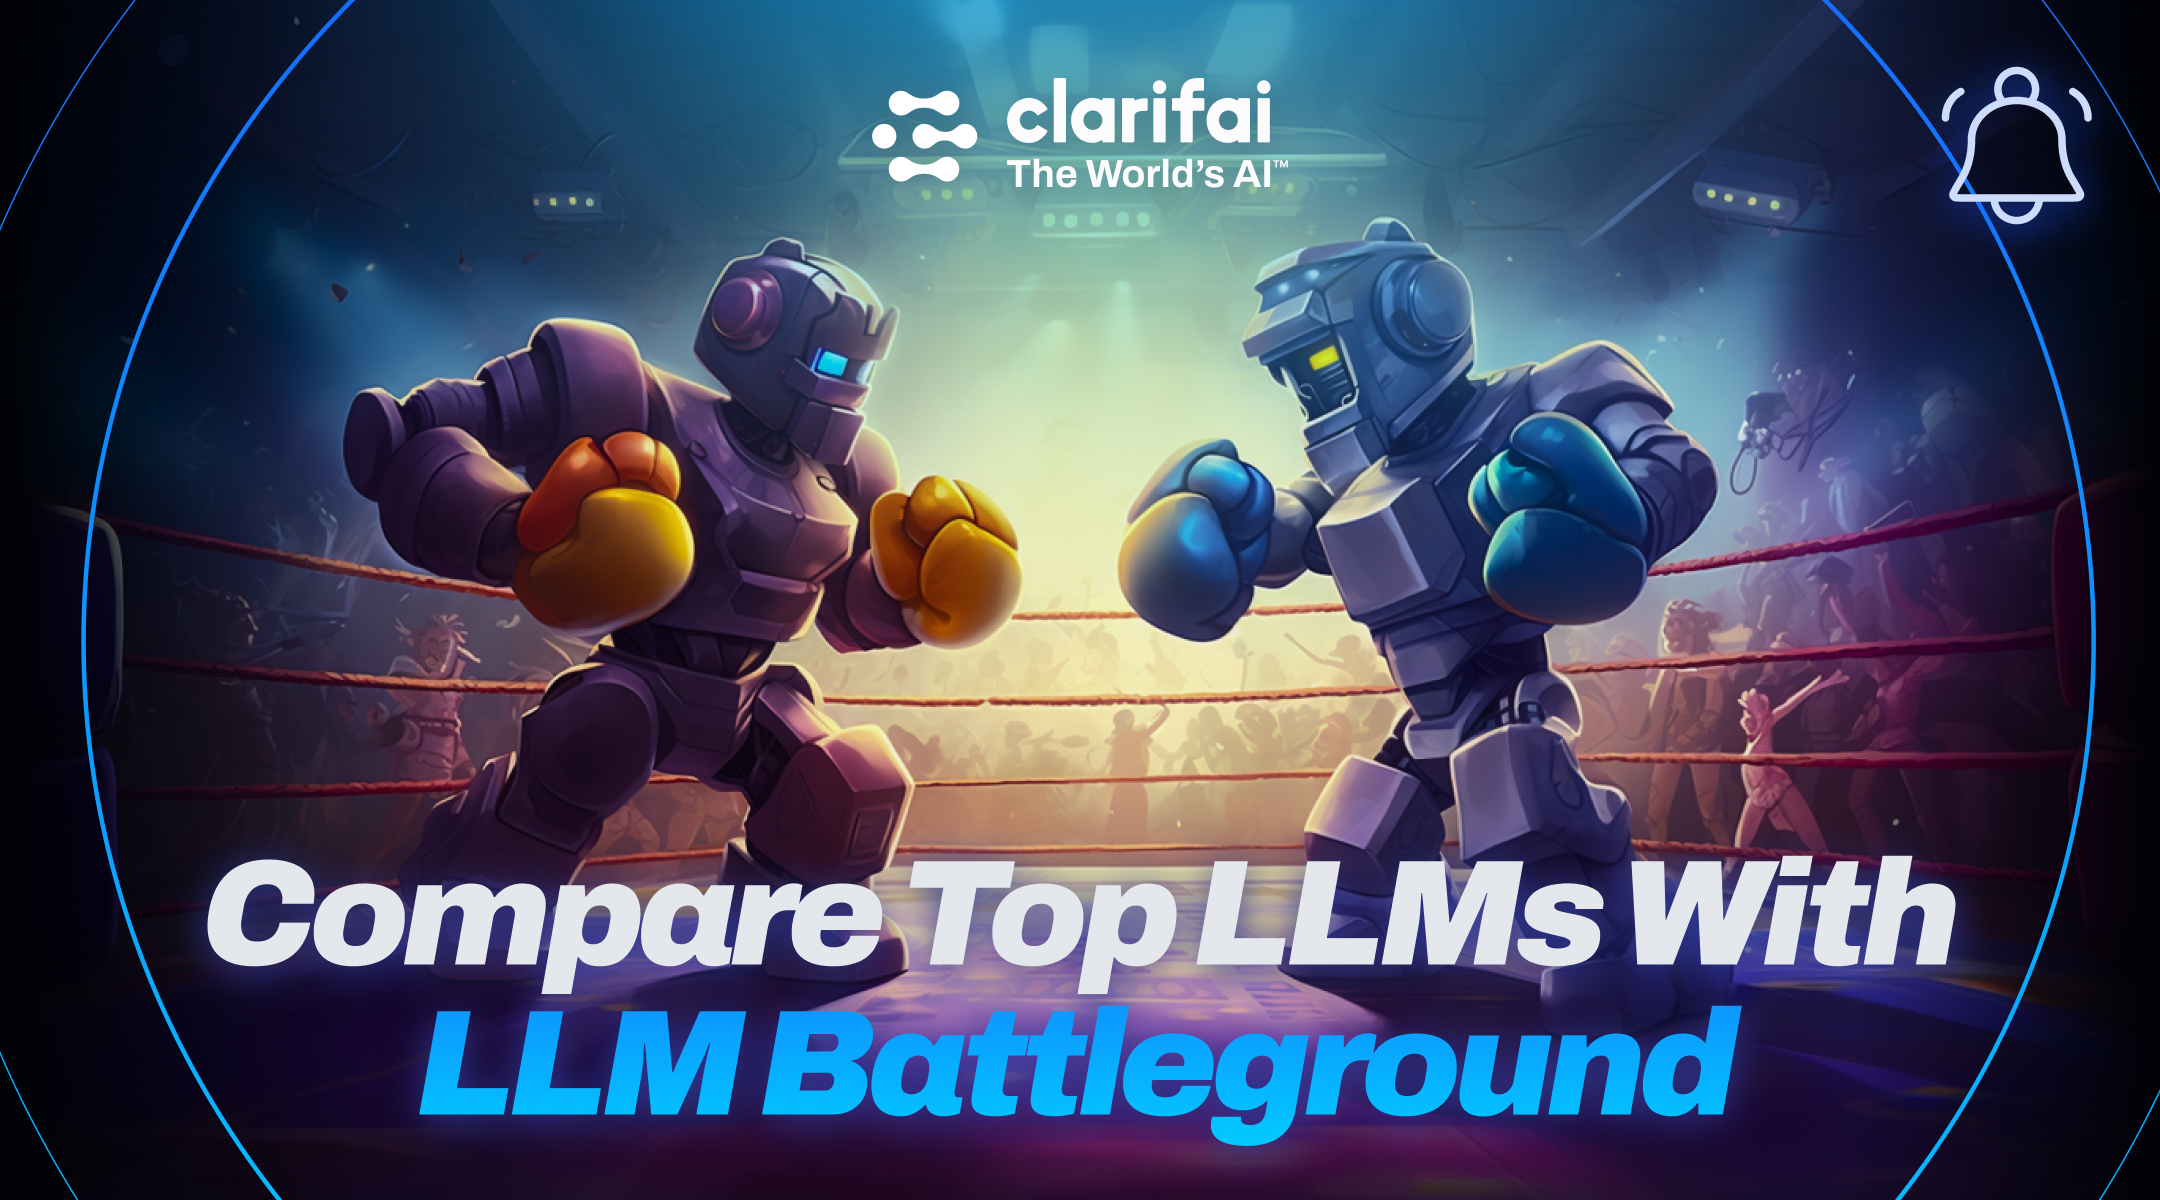 Compare Top LLMs With LLM Battleground